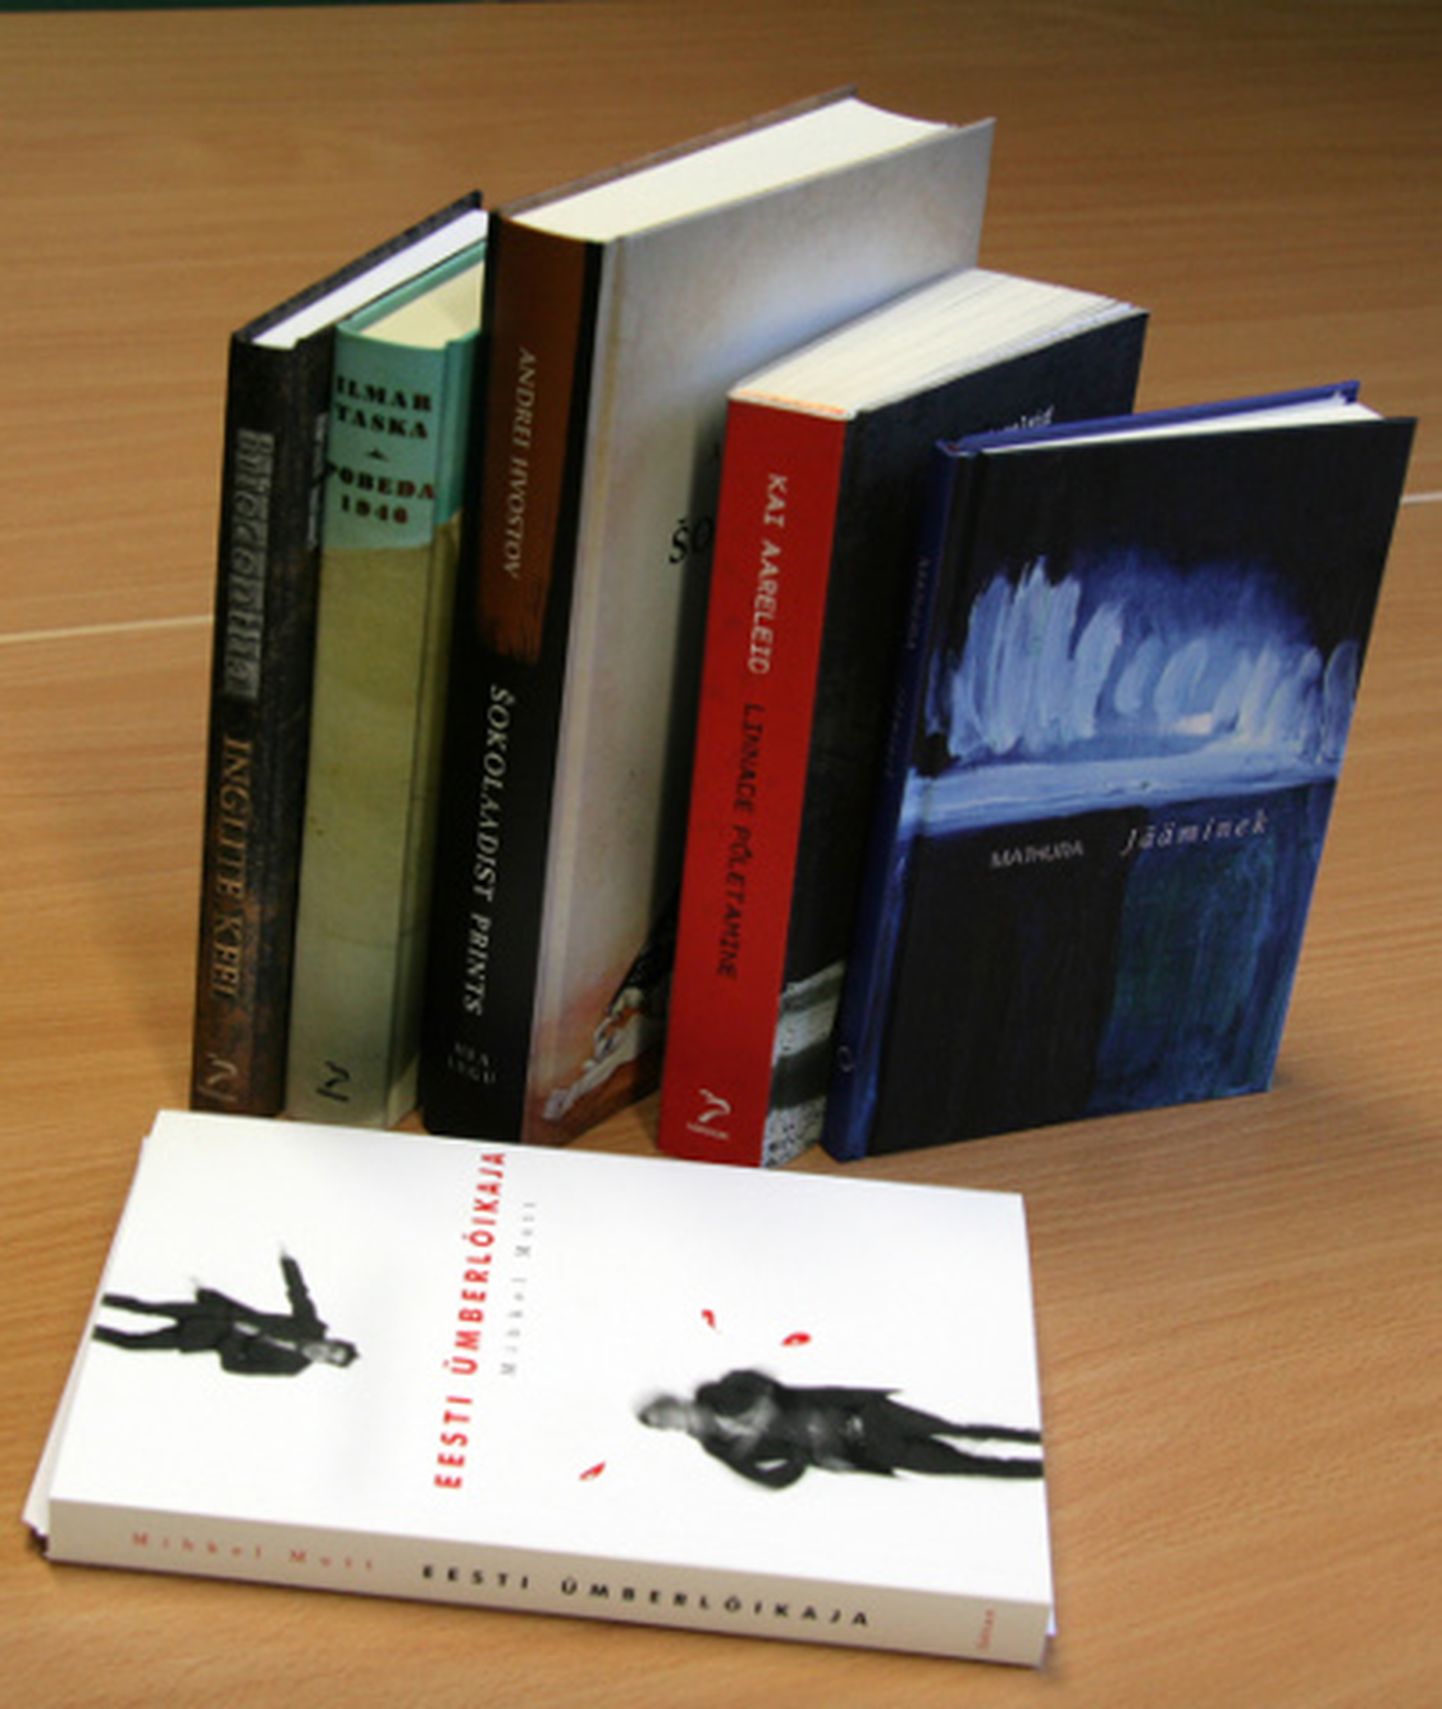 Tänavused Virumaa kirjandusauhinna kandidaadid (fotolt puudub "Uinuv maa", mis oli välja laenutatud).